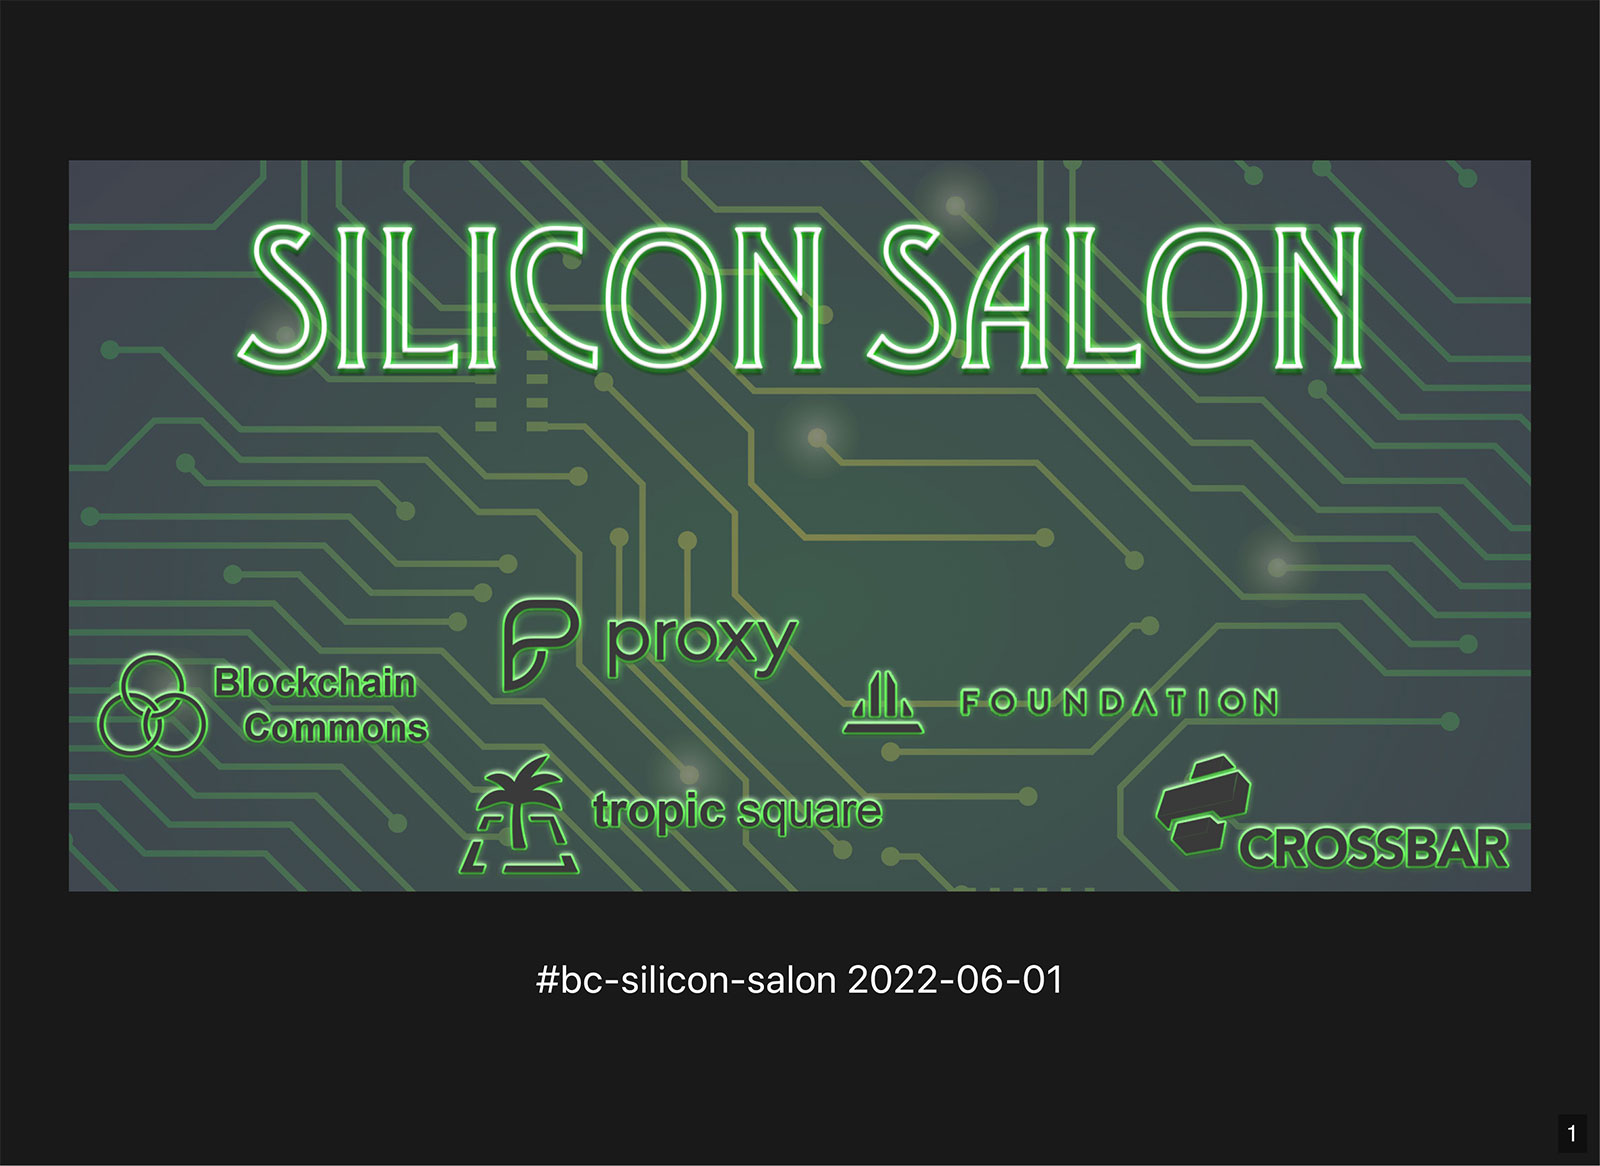 Silicon Salon Overview